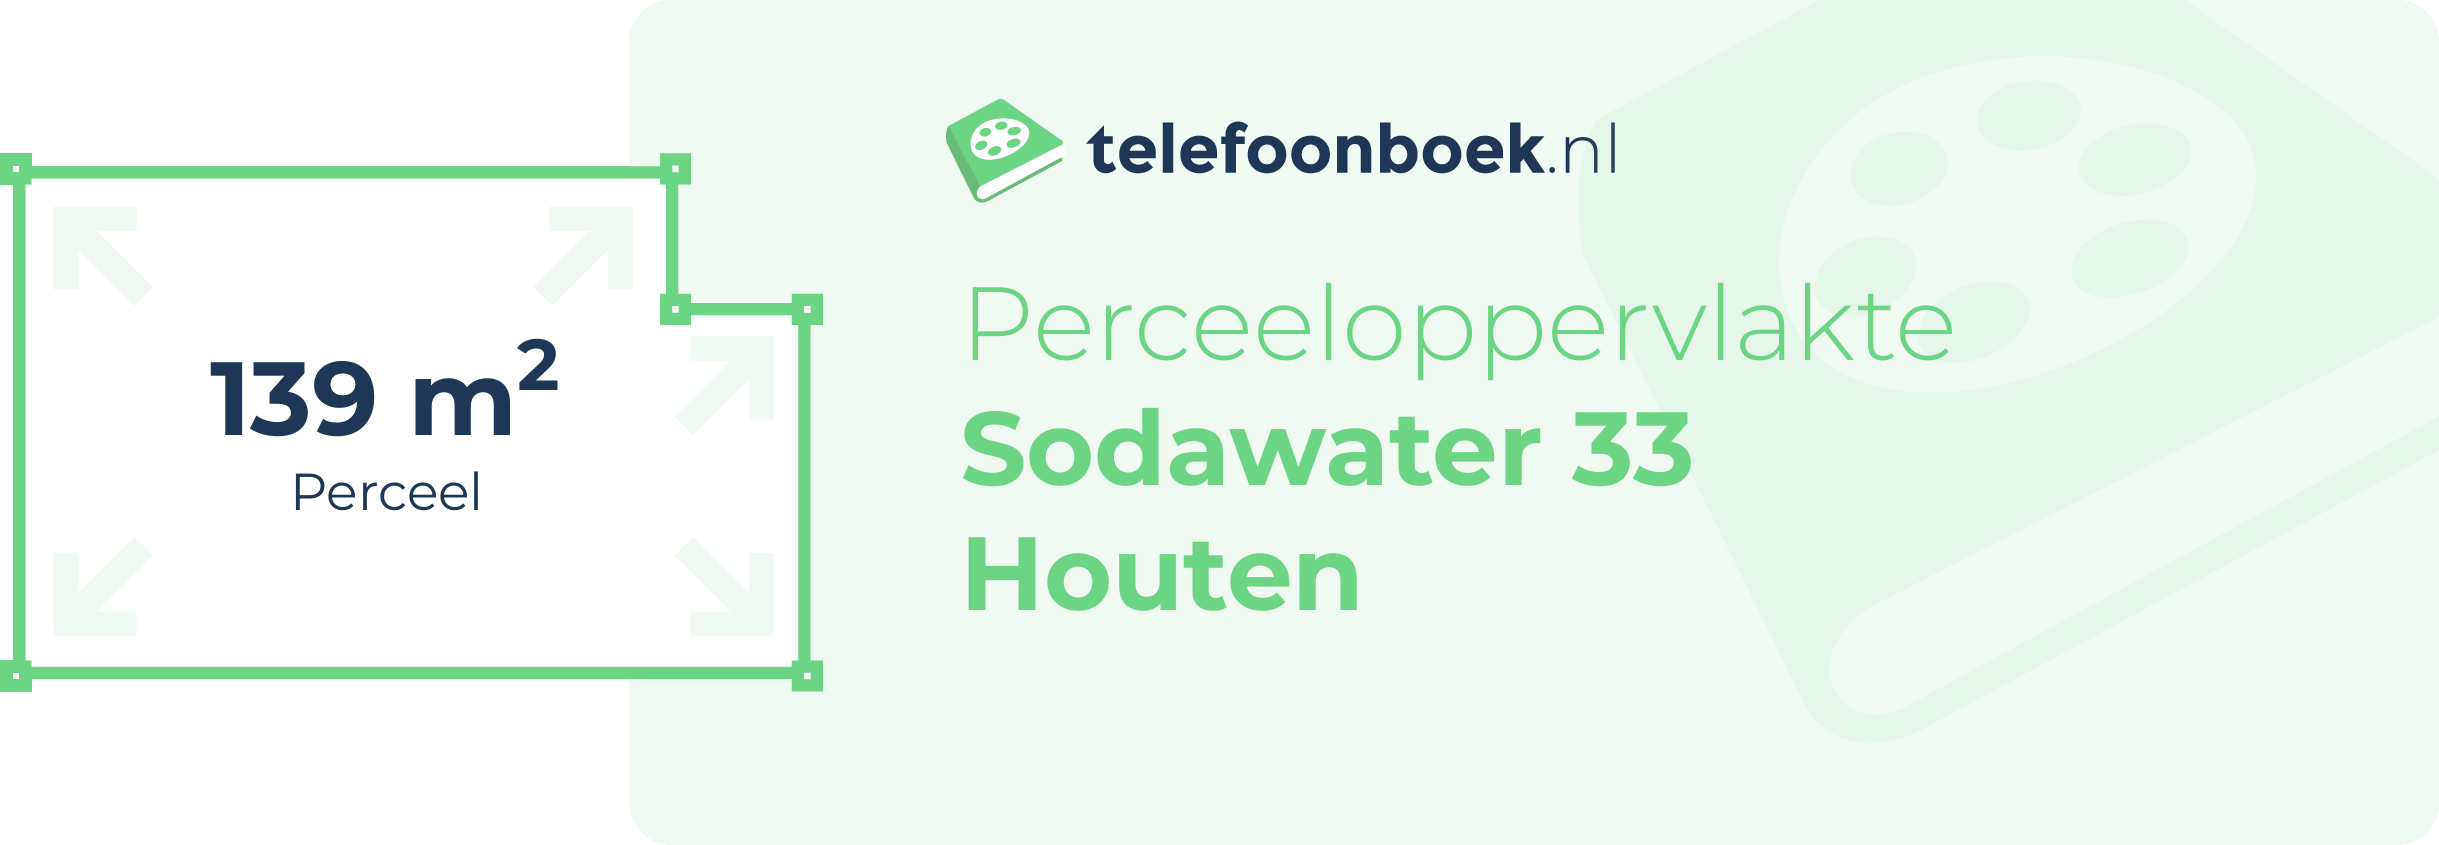 Perceeloppervlakte Sodawater 33 Houten